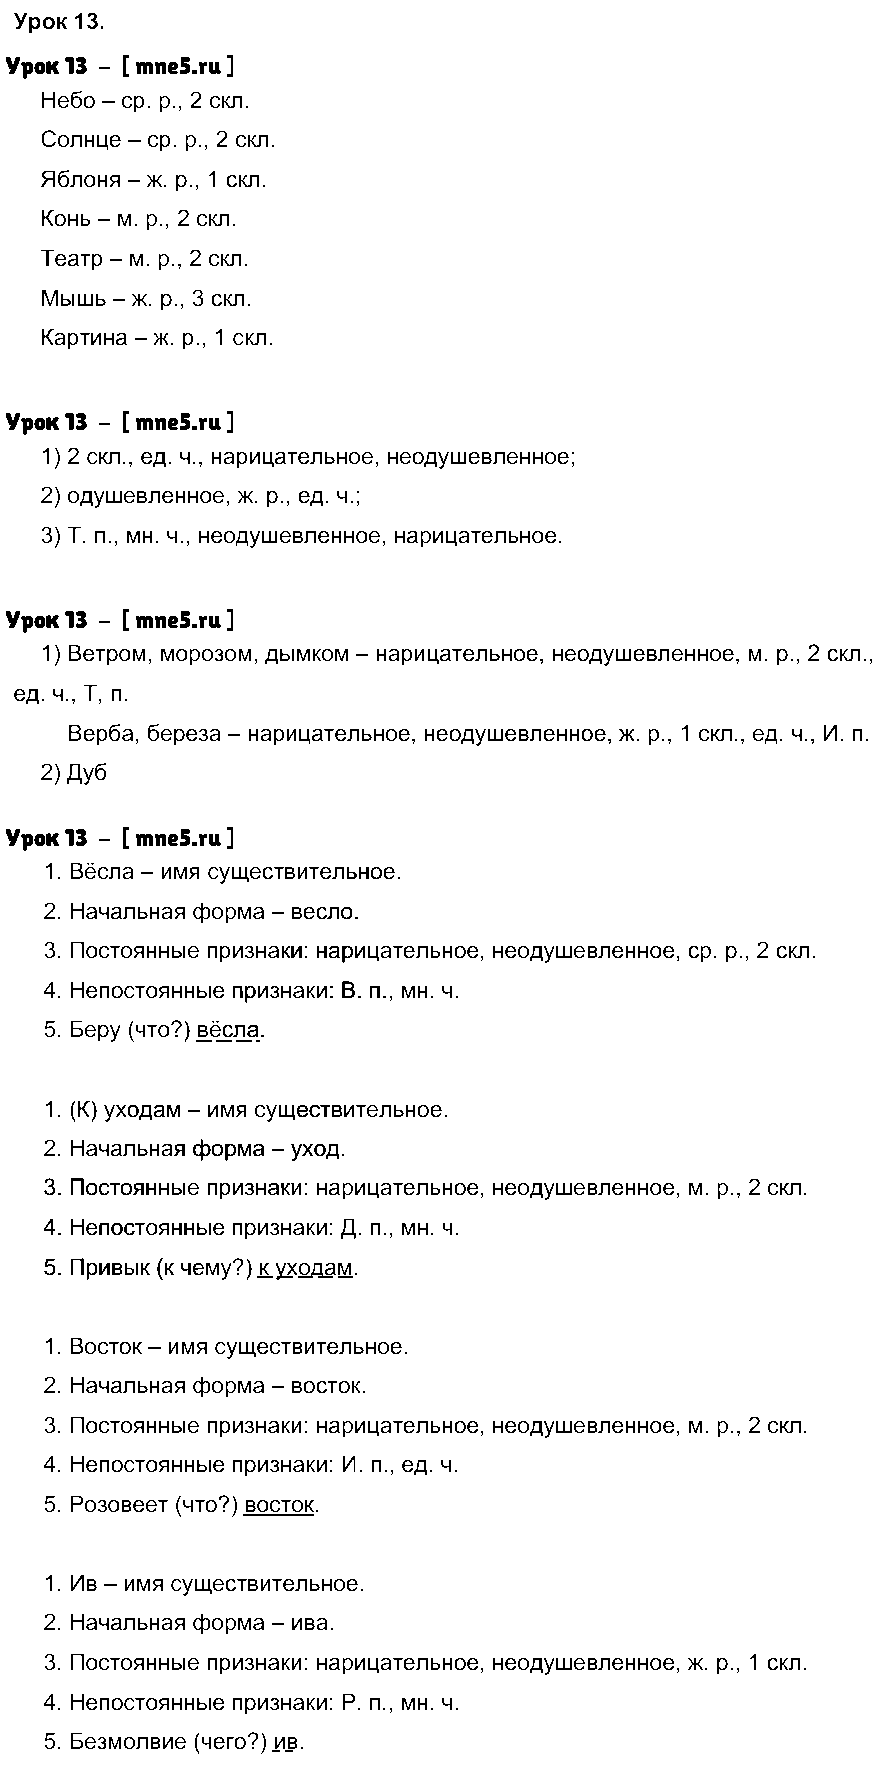 ГДЗ Русский язык 4 класс - Урок 13